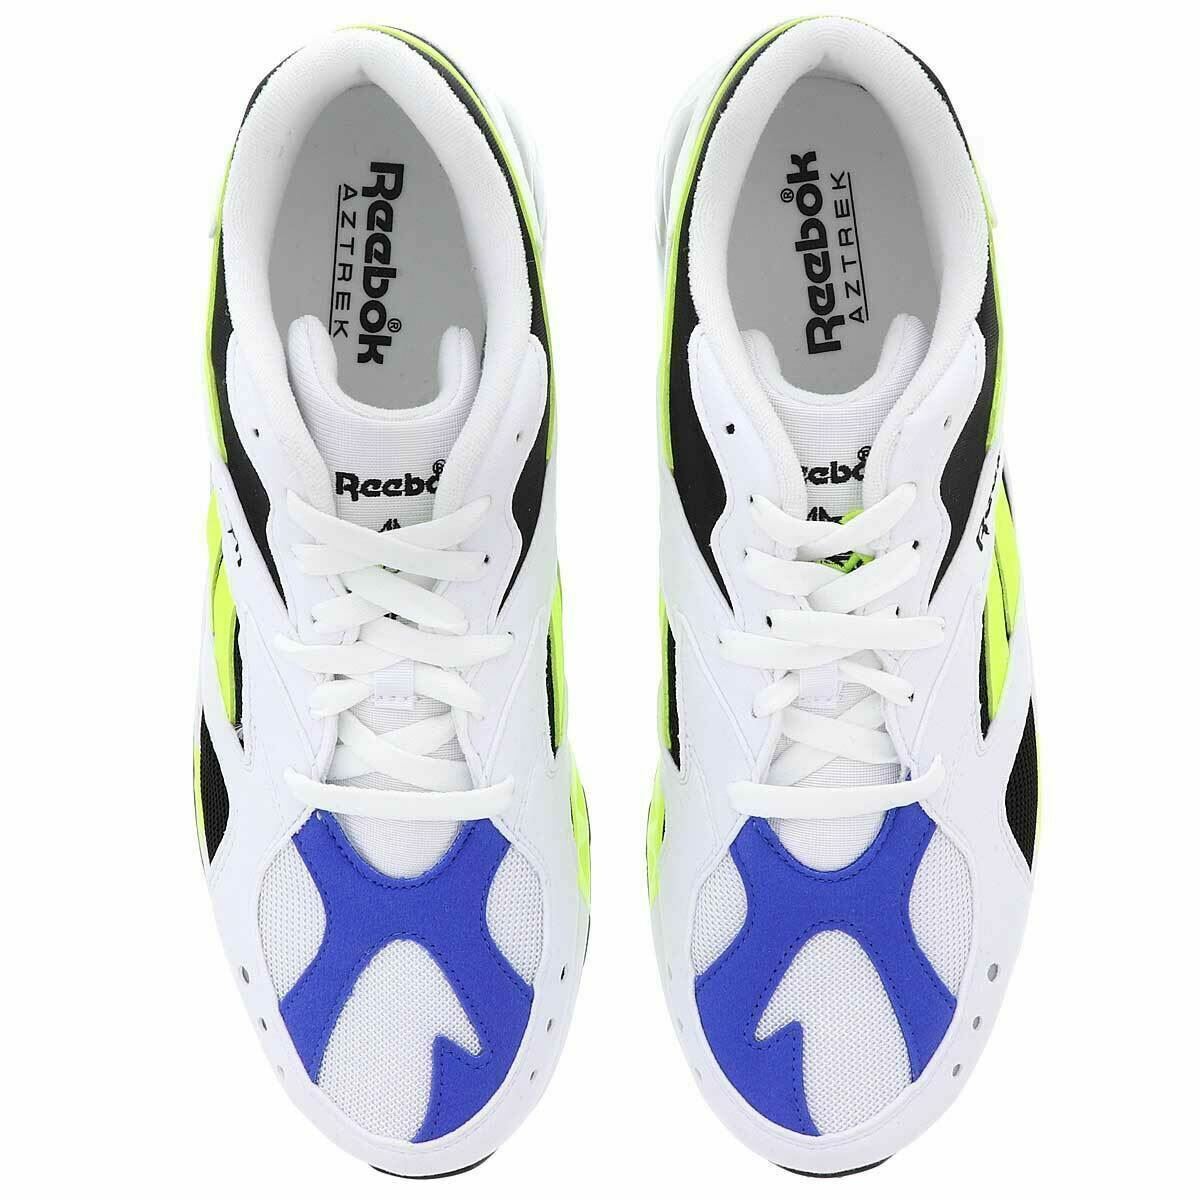 REEBOK Women's AZTREK Classic Trainers, Running Shoes, White/Blue/Yellow, UK 5.5